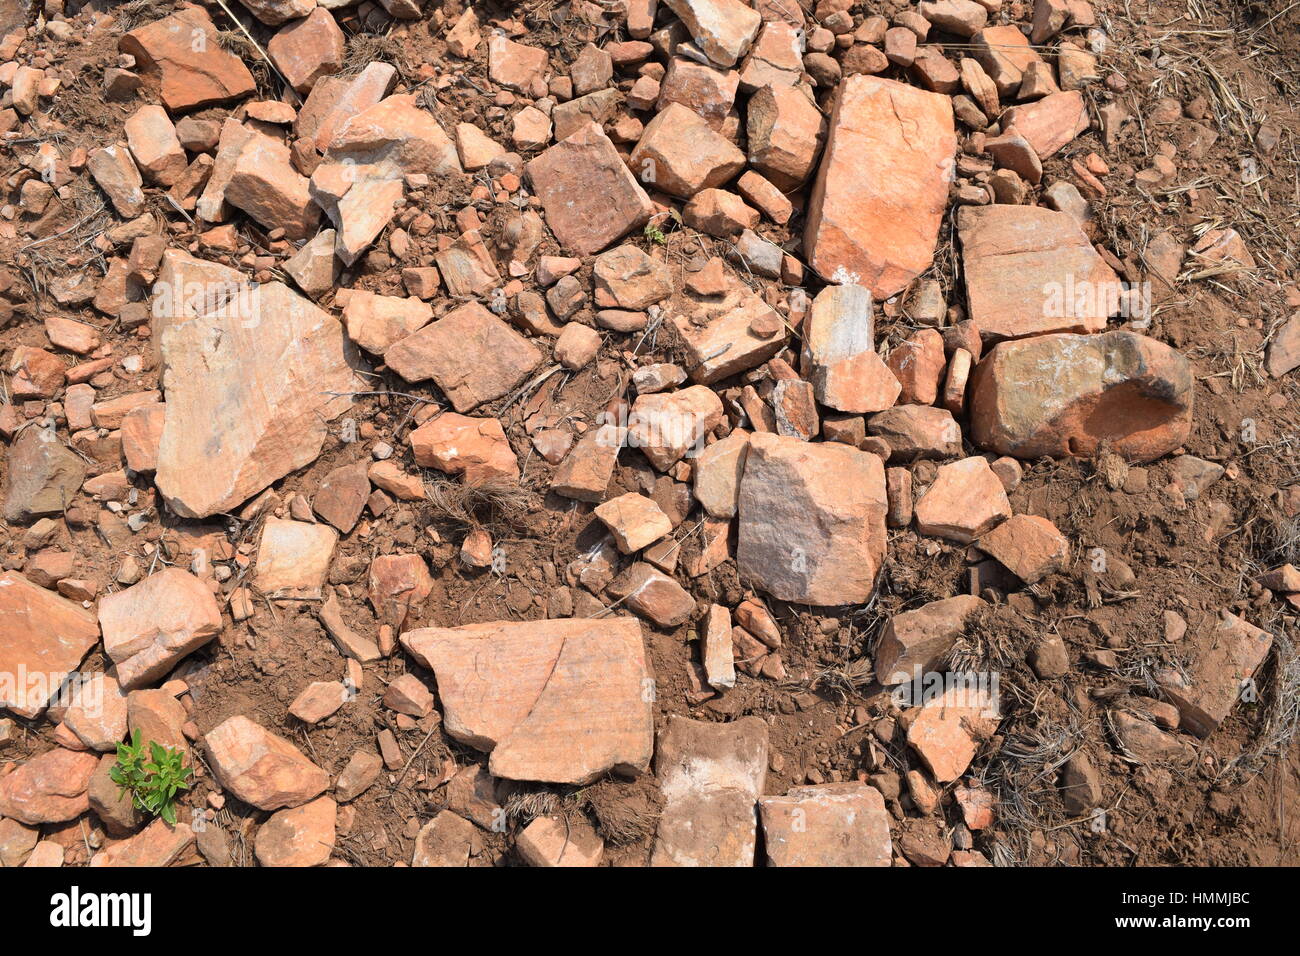 Broken rocks on the ground Stock Photo